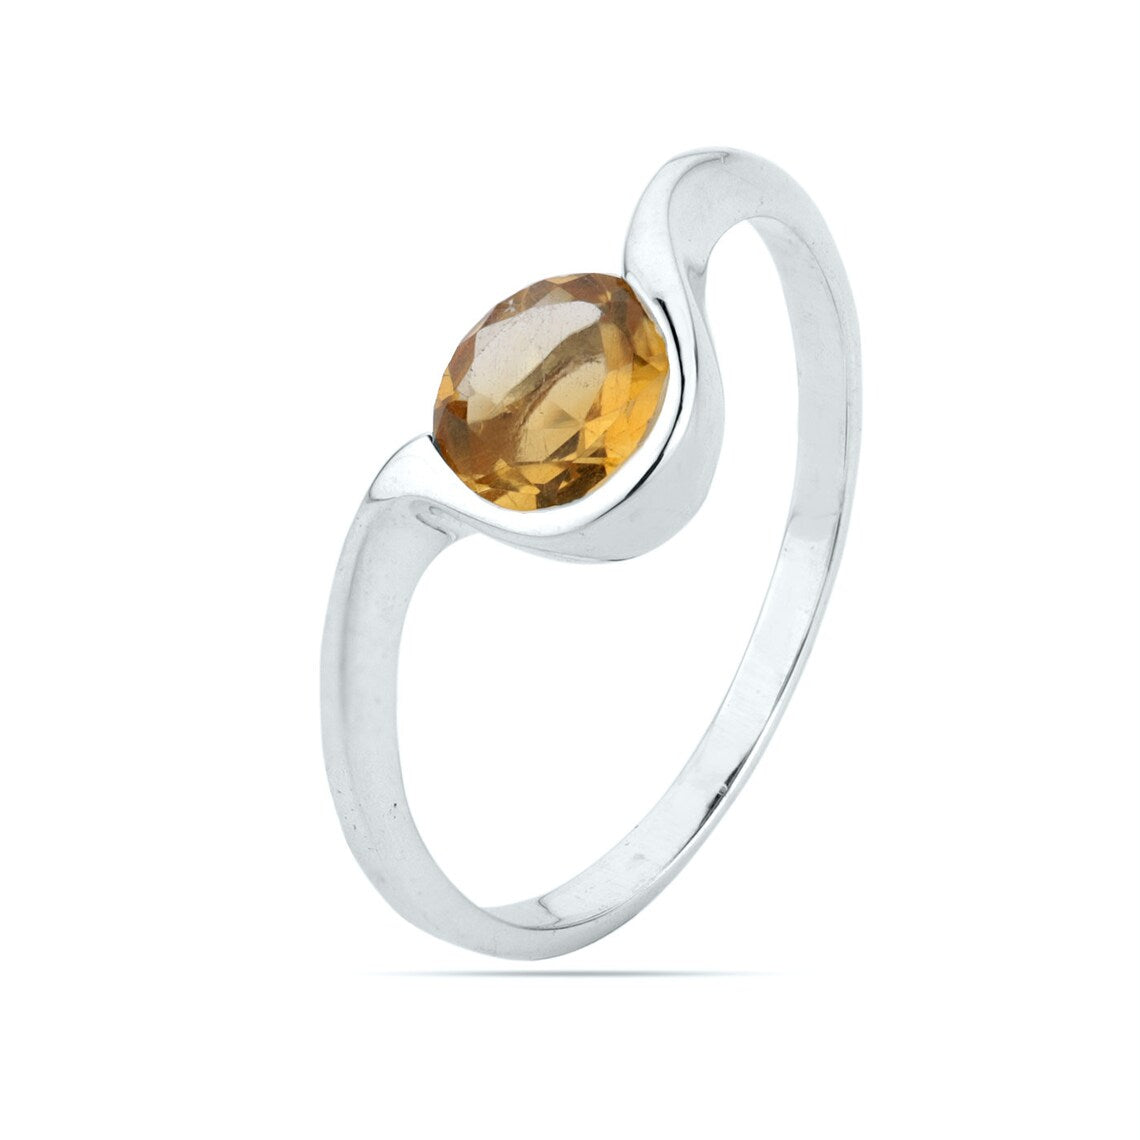 Round Citrine Ring, Natural Citrine Ring, Citrine Delicate Ring, Promise Ring, November Birthstone Ring